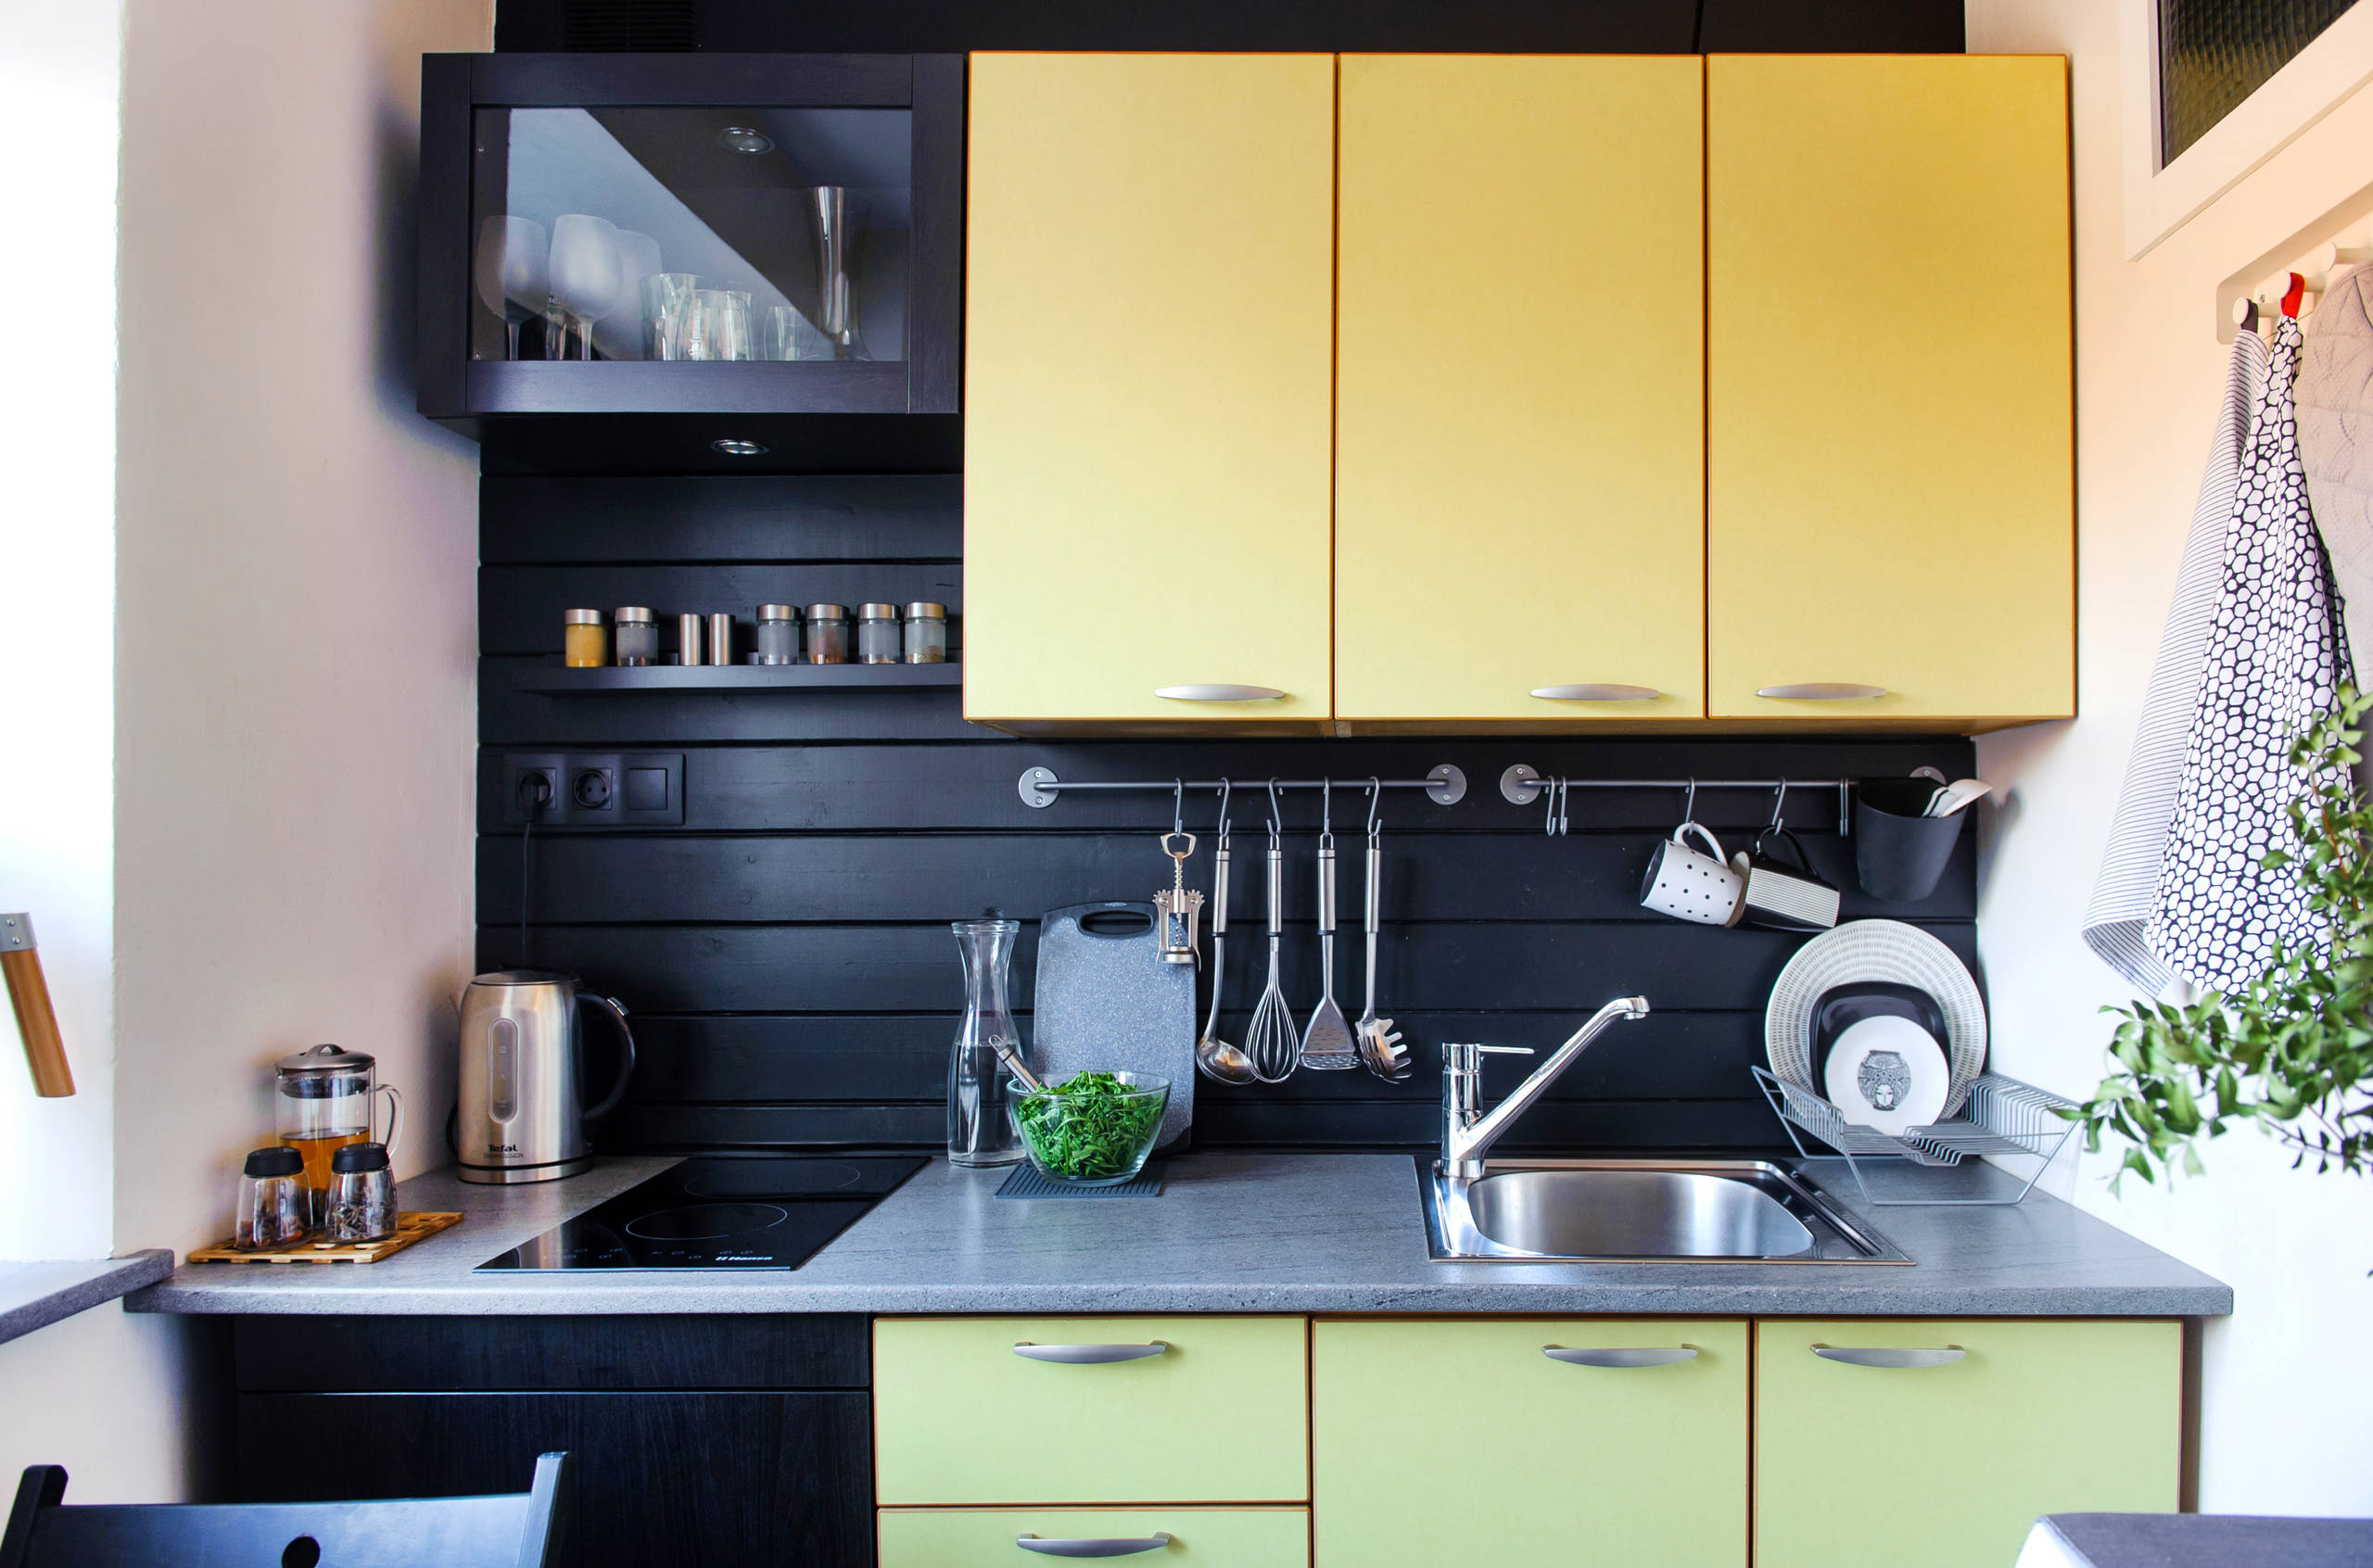 Кухня 6 кв. м: дизайн и его особенности